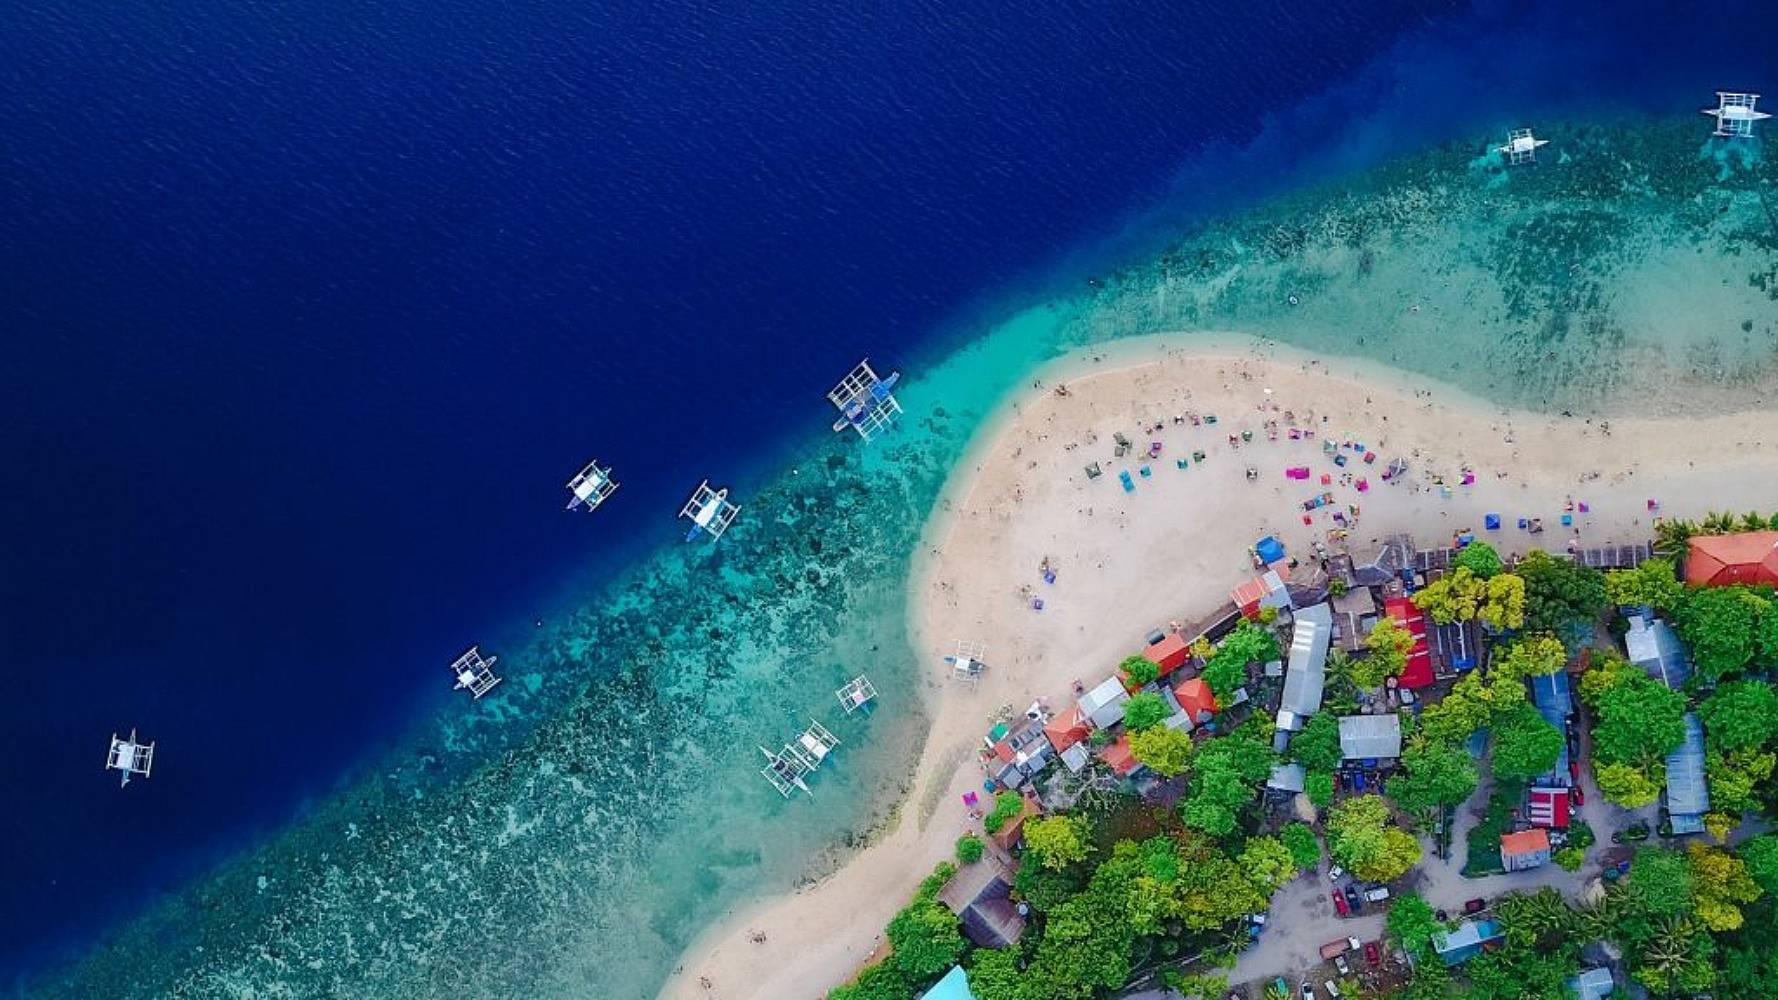 Les plus belles îles de Palawan, Bohol et Siquijor